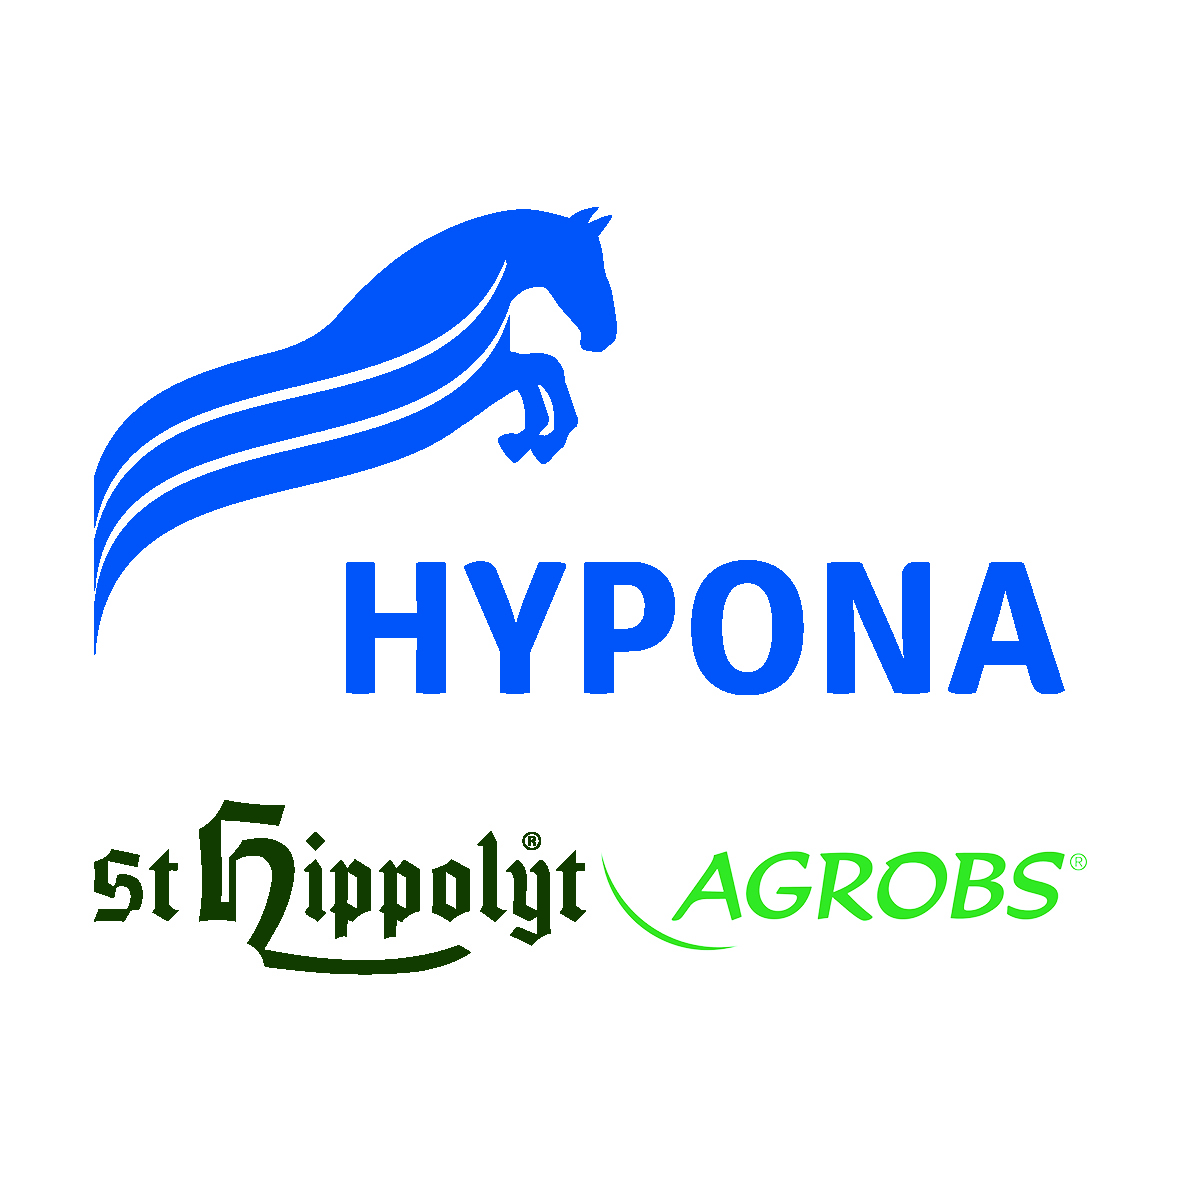 Hypona